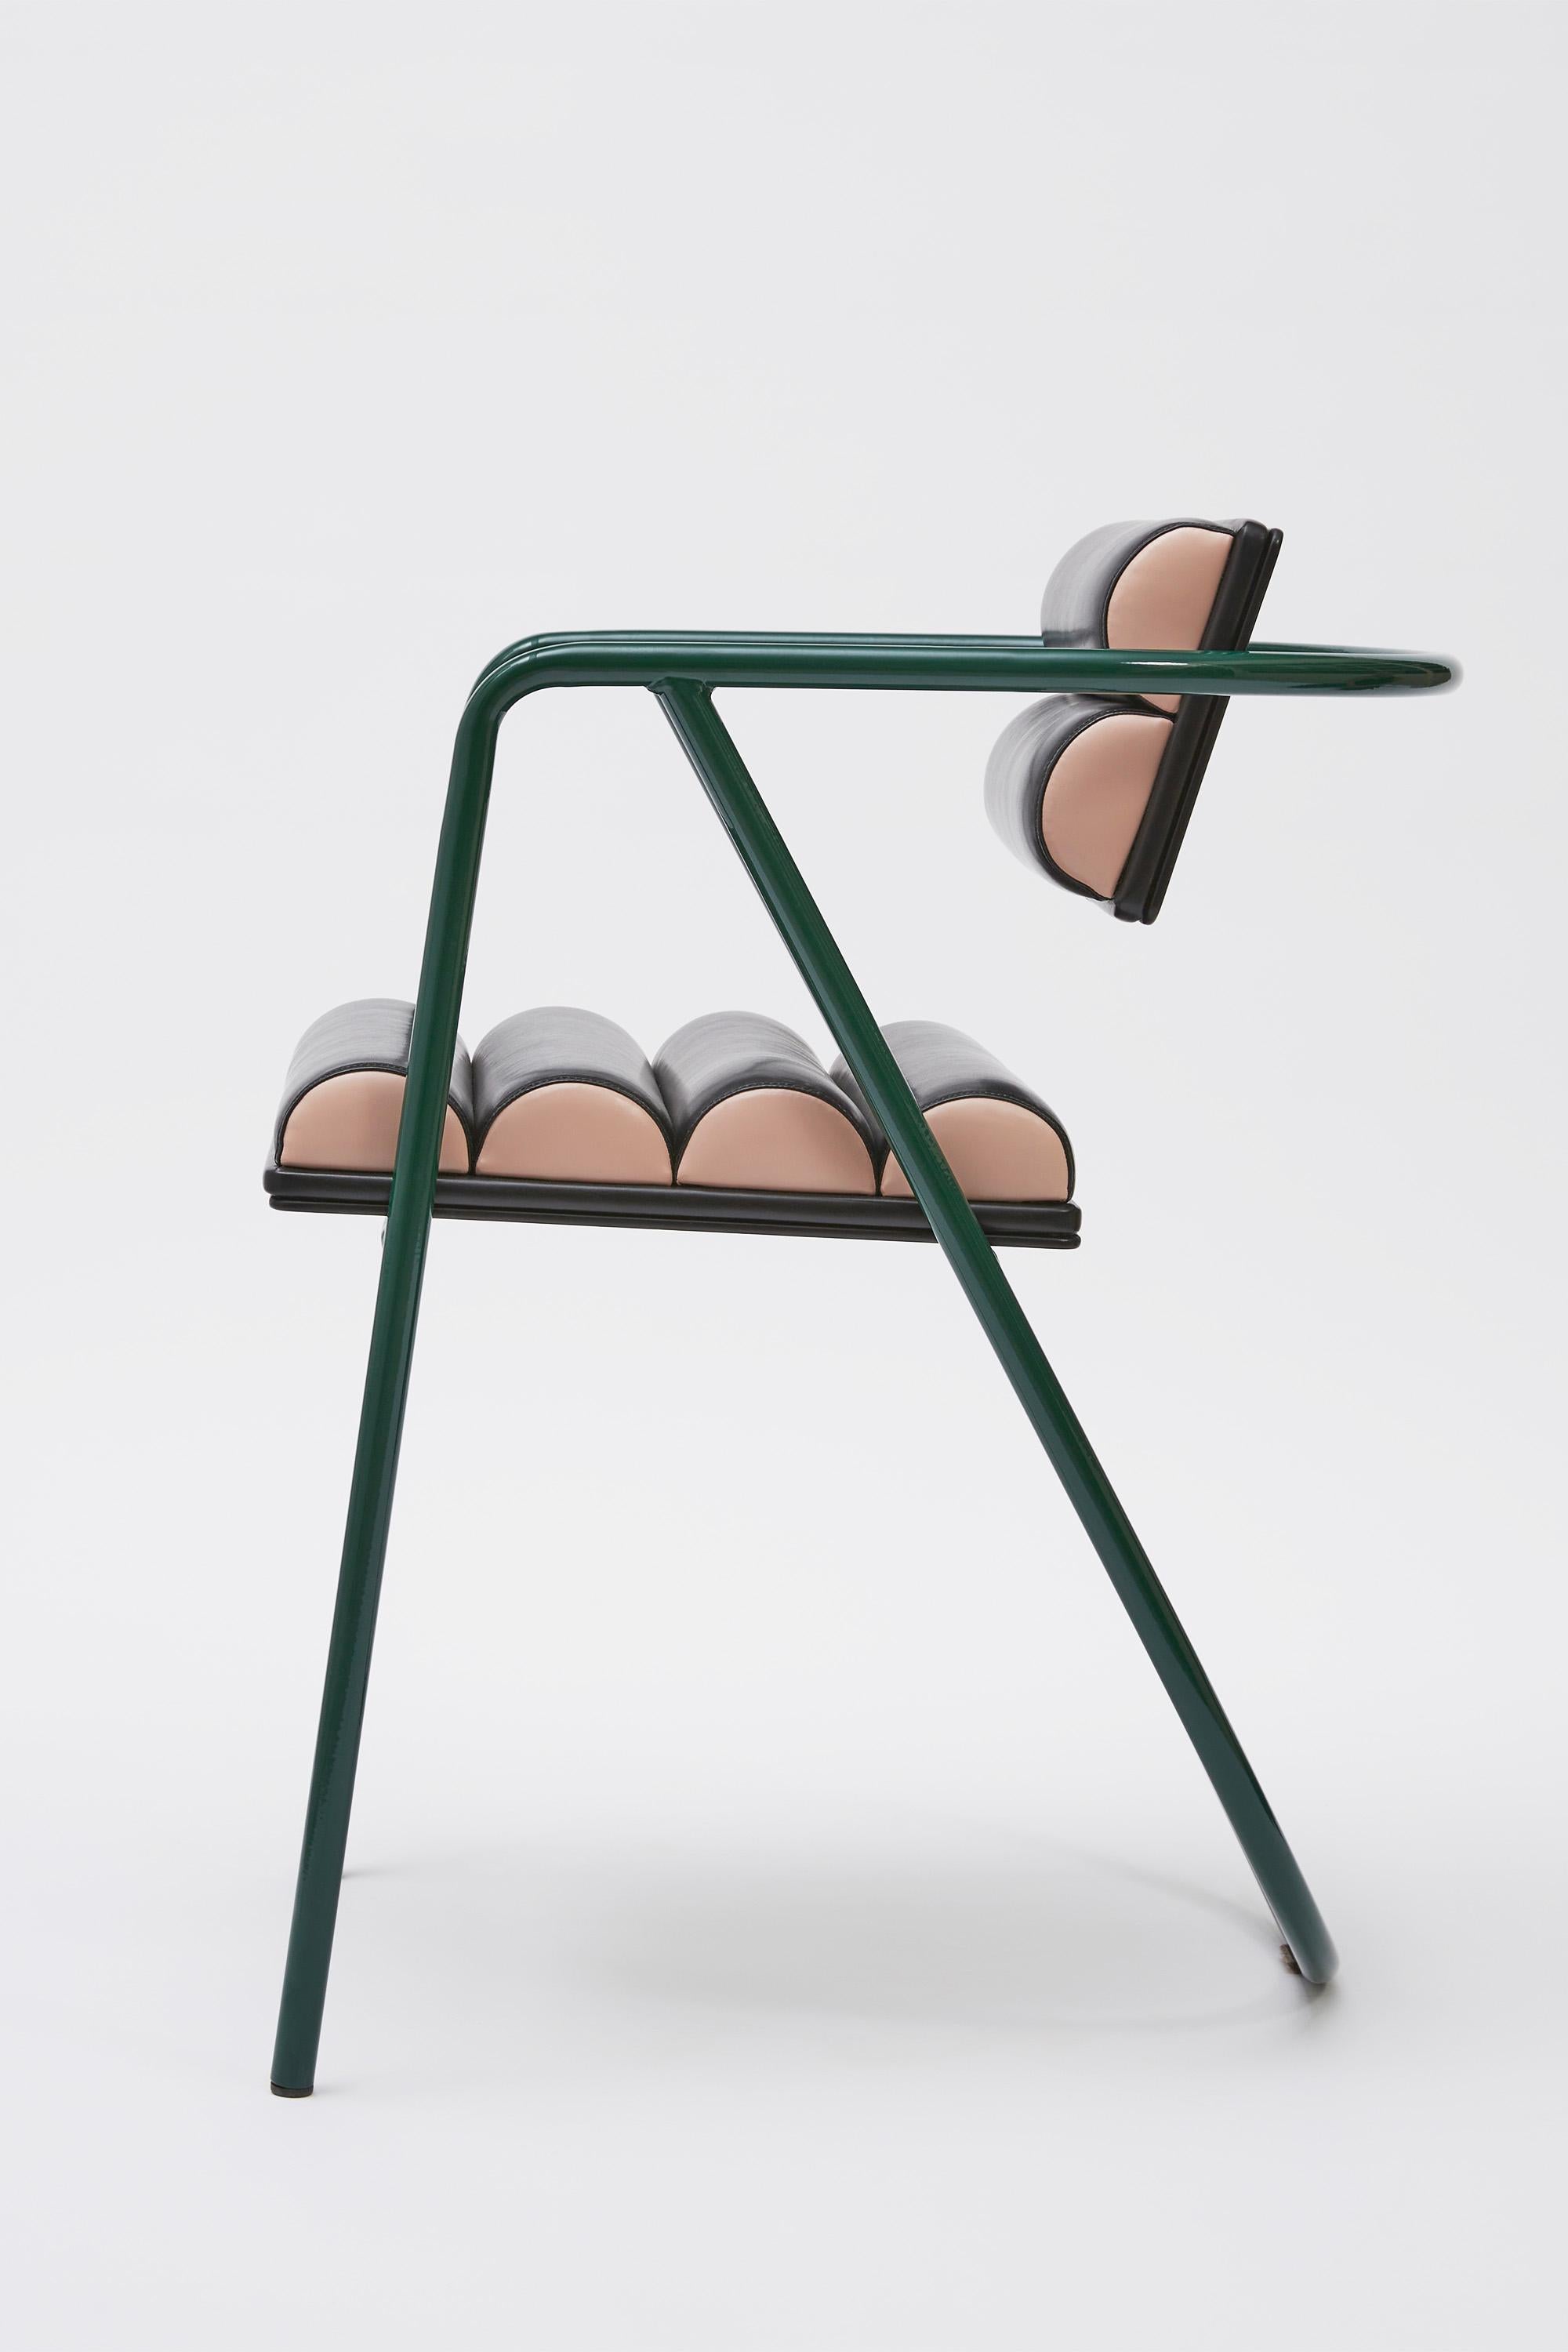 Contemporary La Misciù Spring Chair For Sale